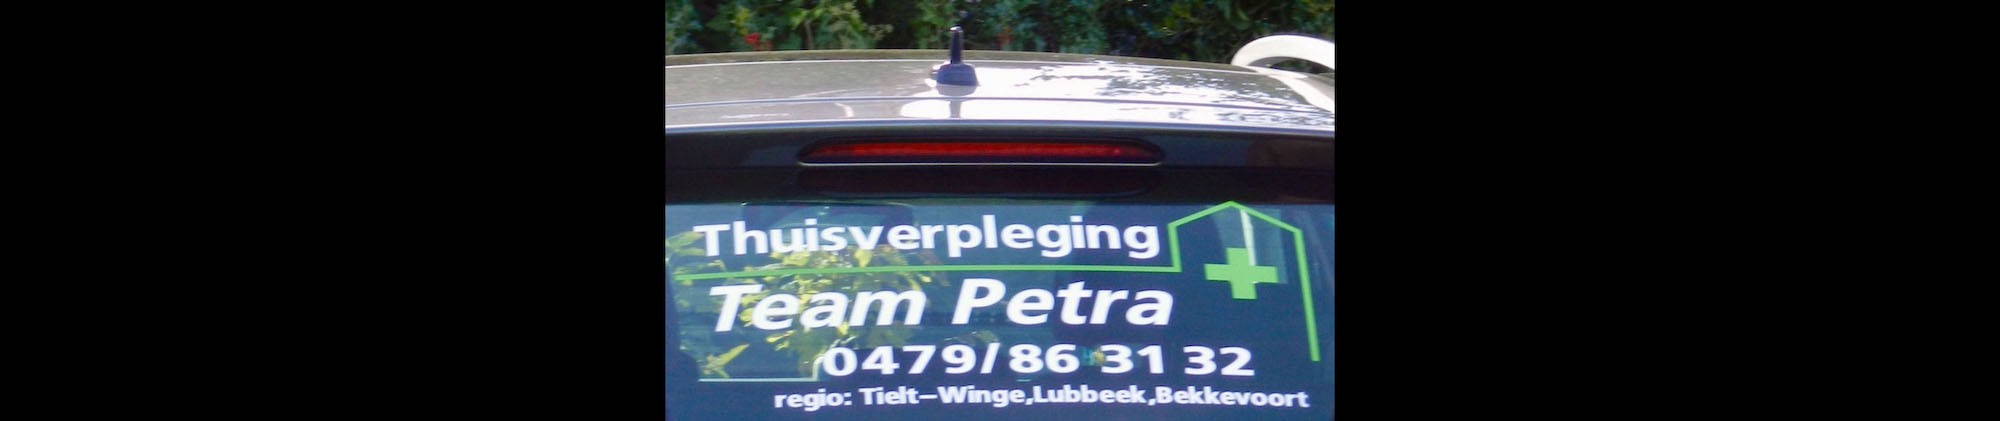 Header Thuisverpleging Team Petra - Bekkevoort, Lubbeek, Tielt-Winge